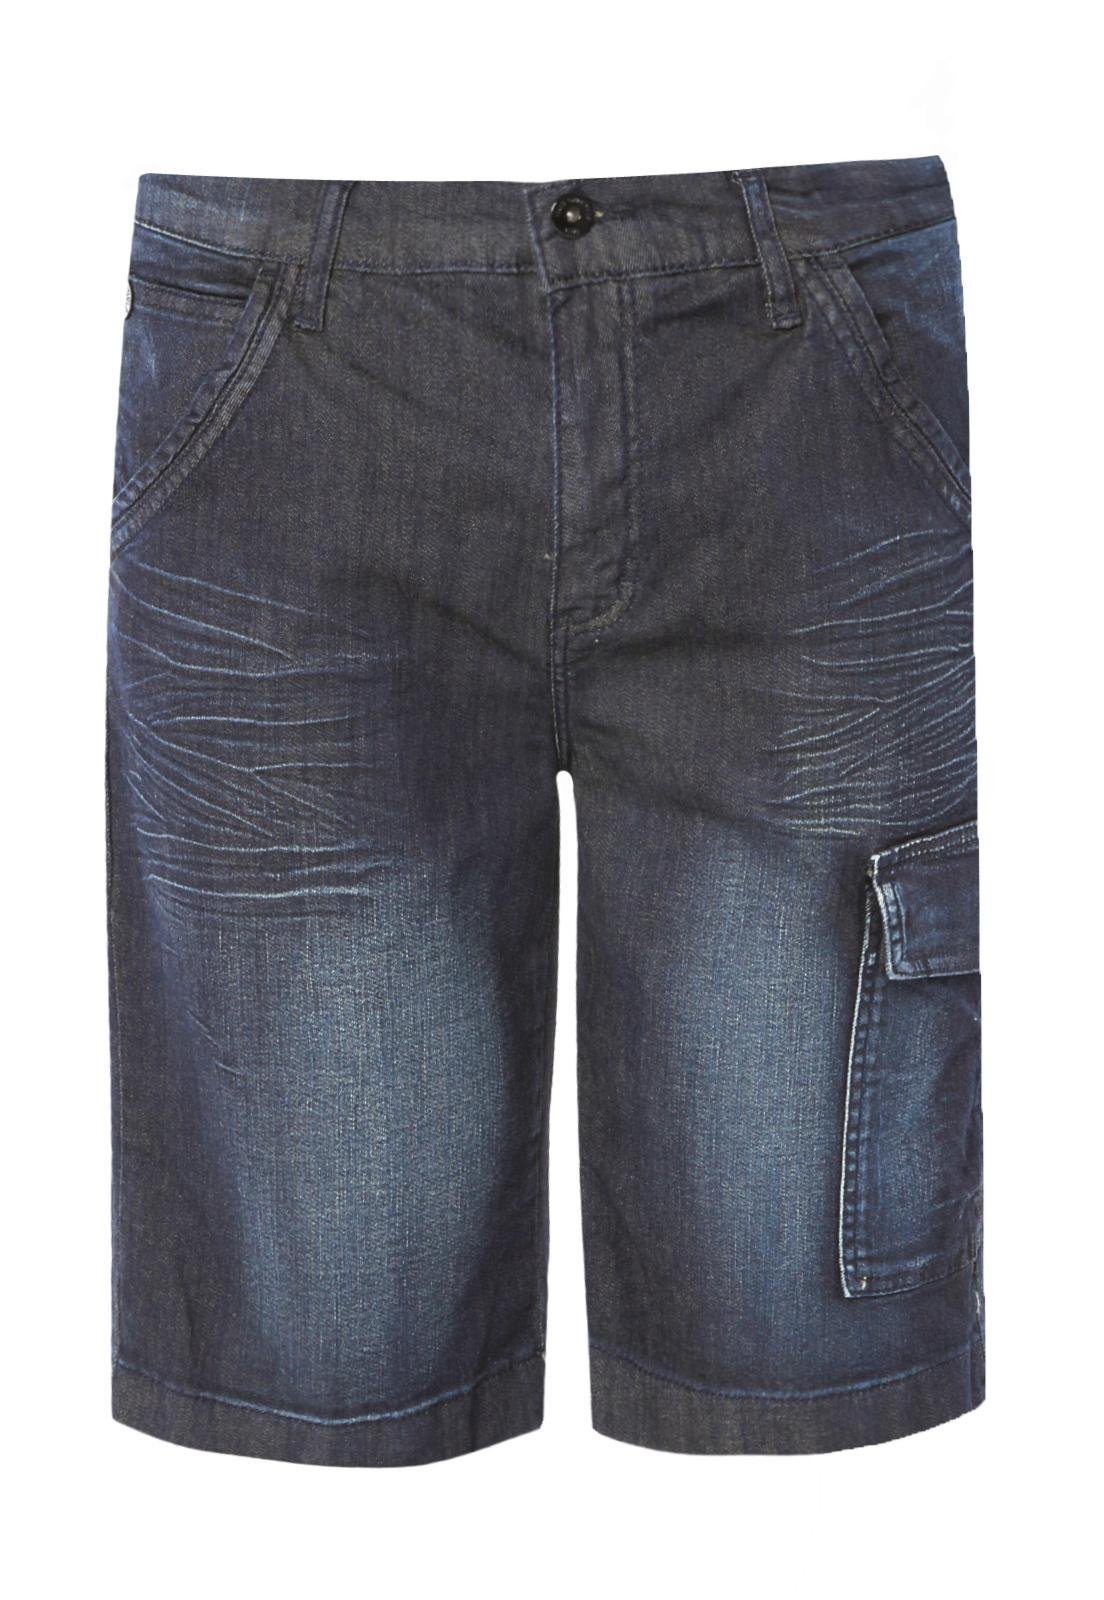 bermuda jeans masculina com bolsos laterais